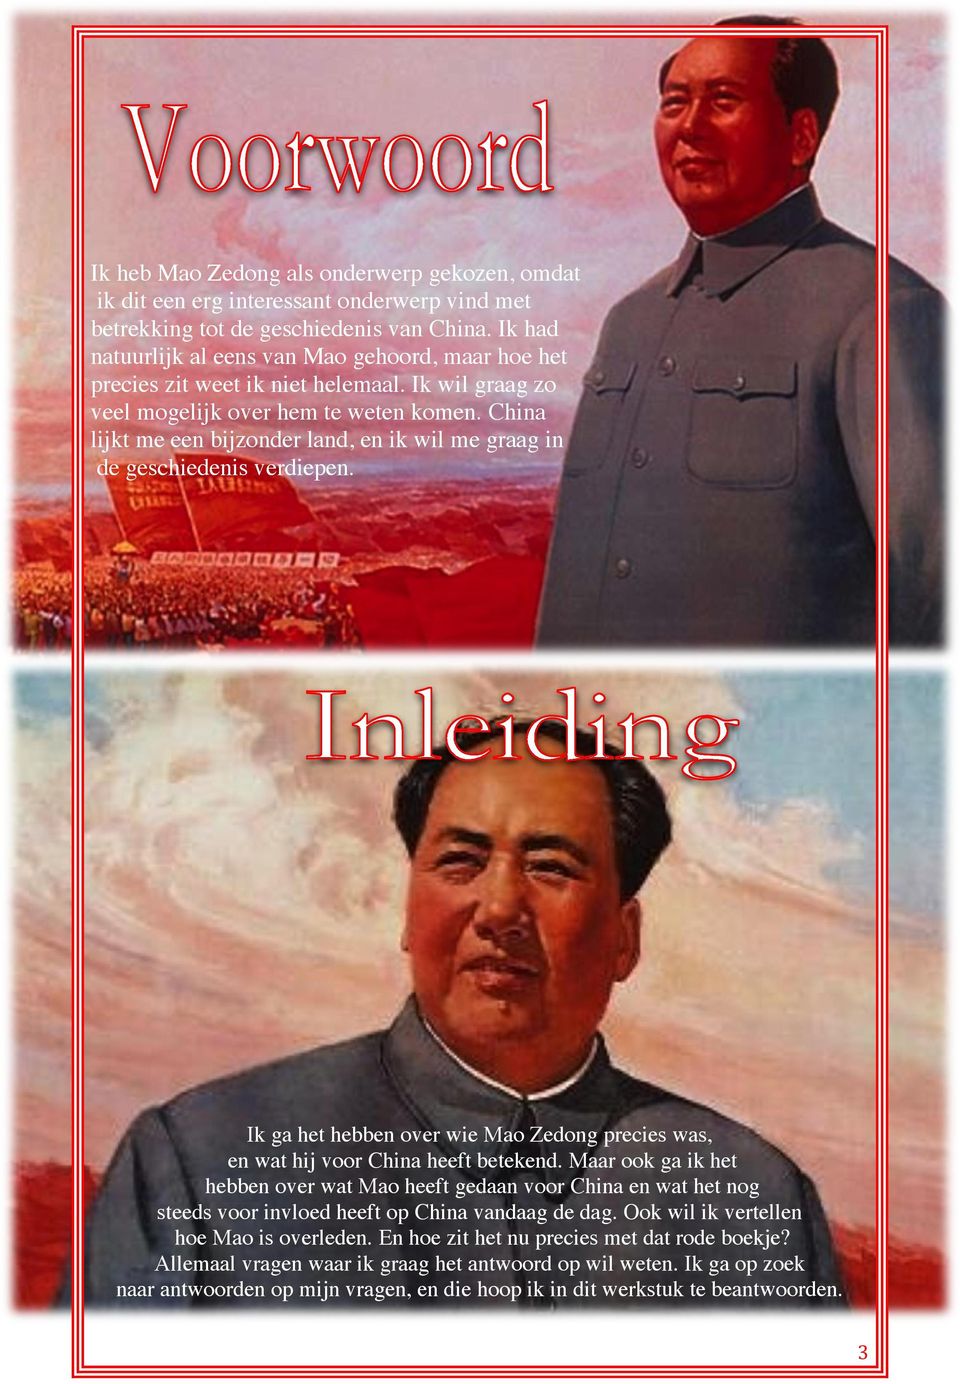 China lijkt me een bijzonder land, en ik wil me graag in de geschiedenis verdiepen. Ik ga het hebben over wie Mao Zedong precies was, en wat hij voor China heeft betekend.